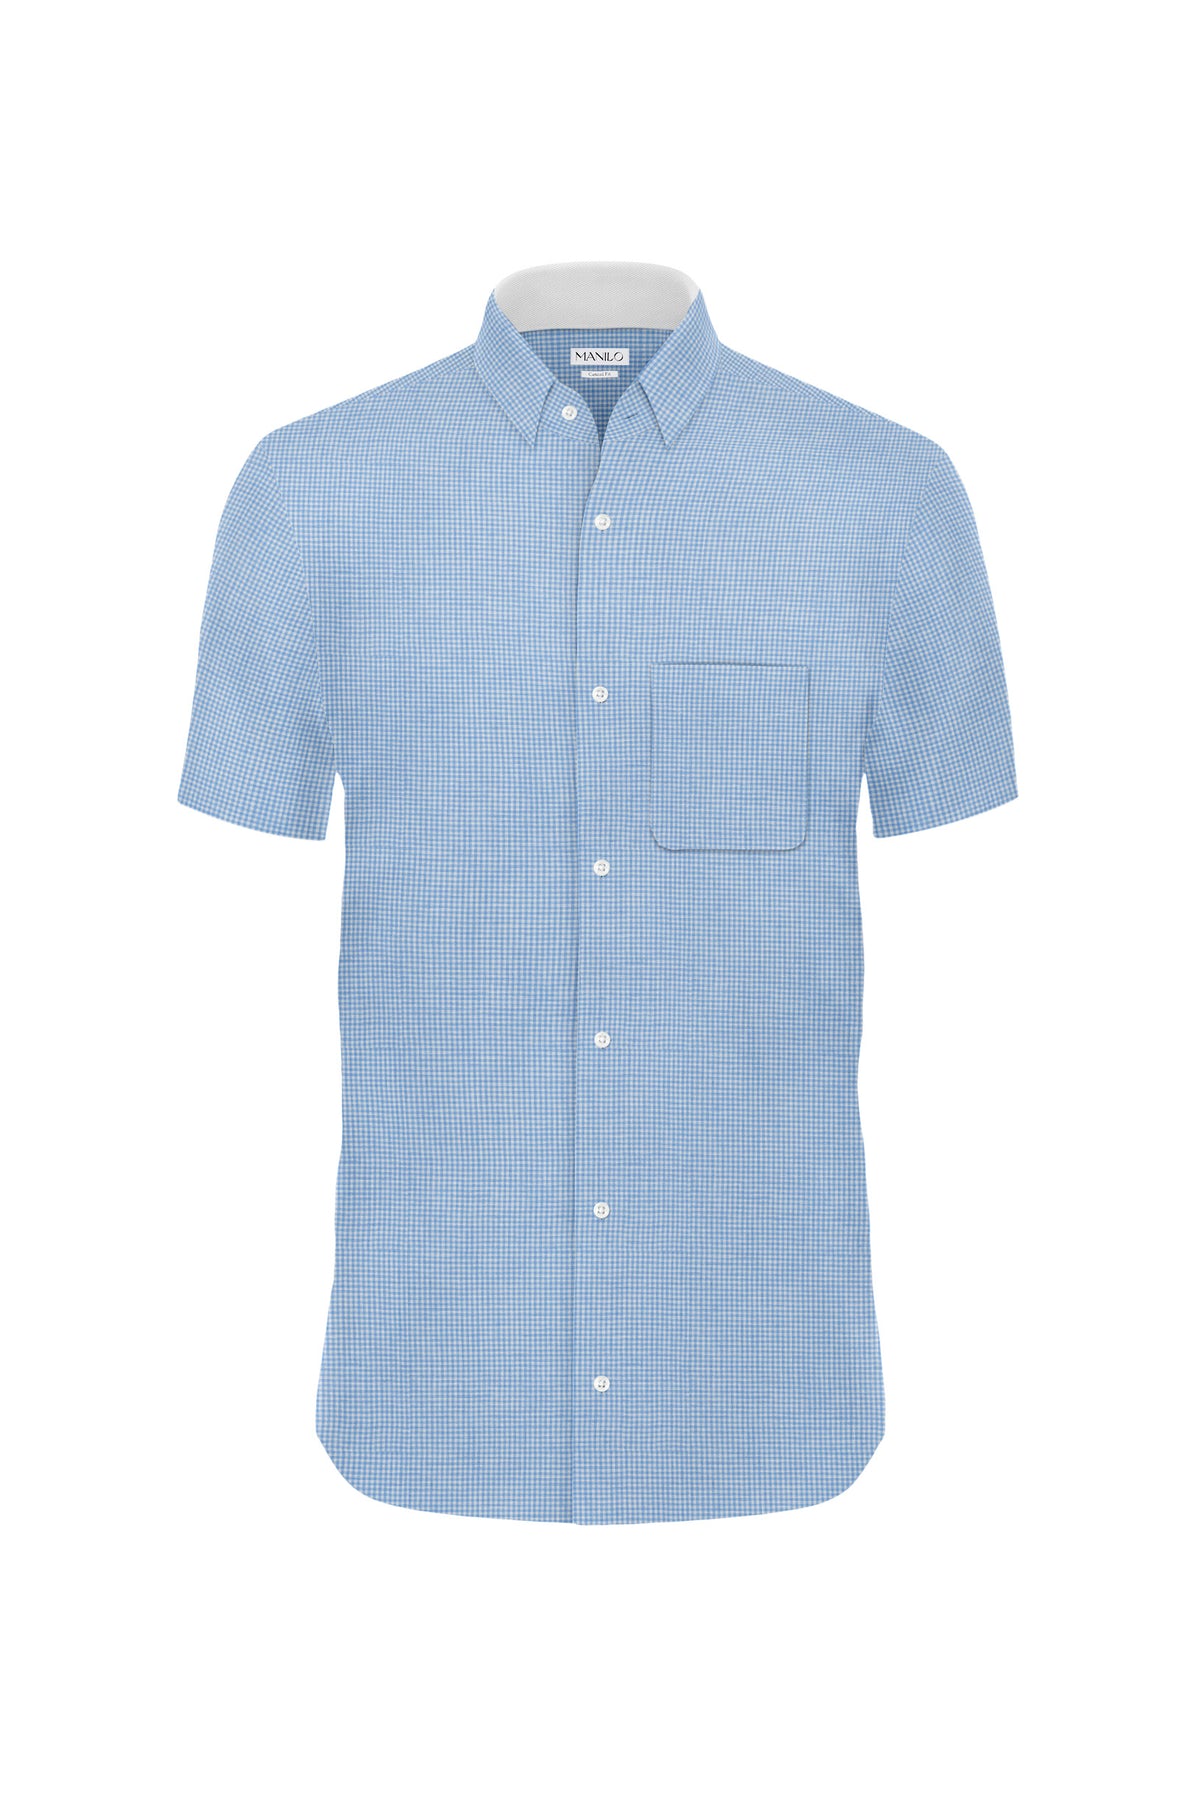 Linen shirt with check pattern in light blue (Art. 2266-C-KA)